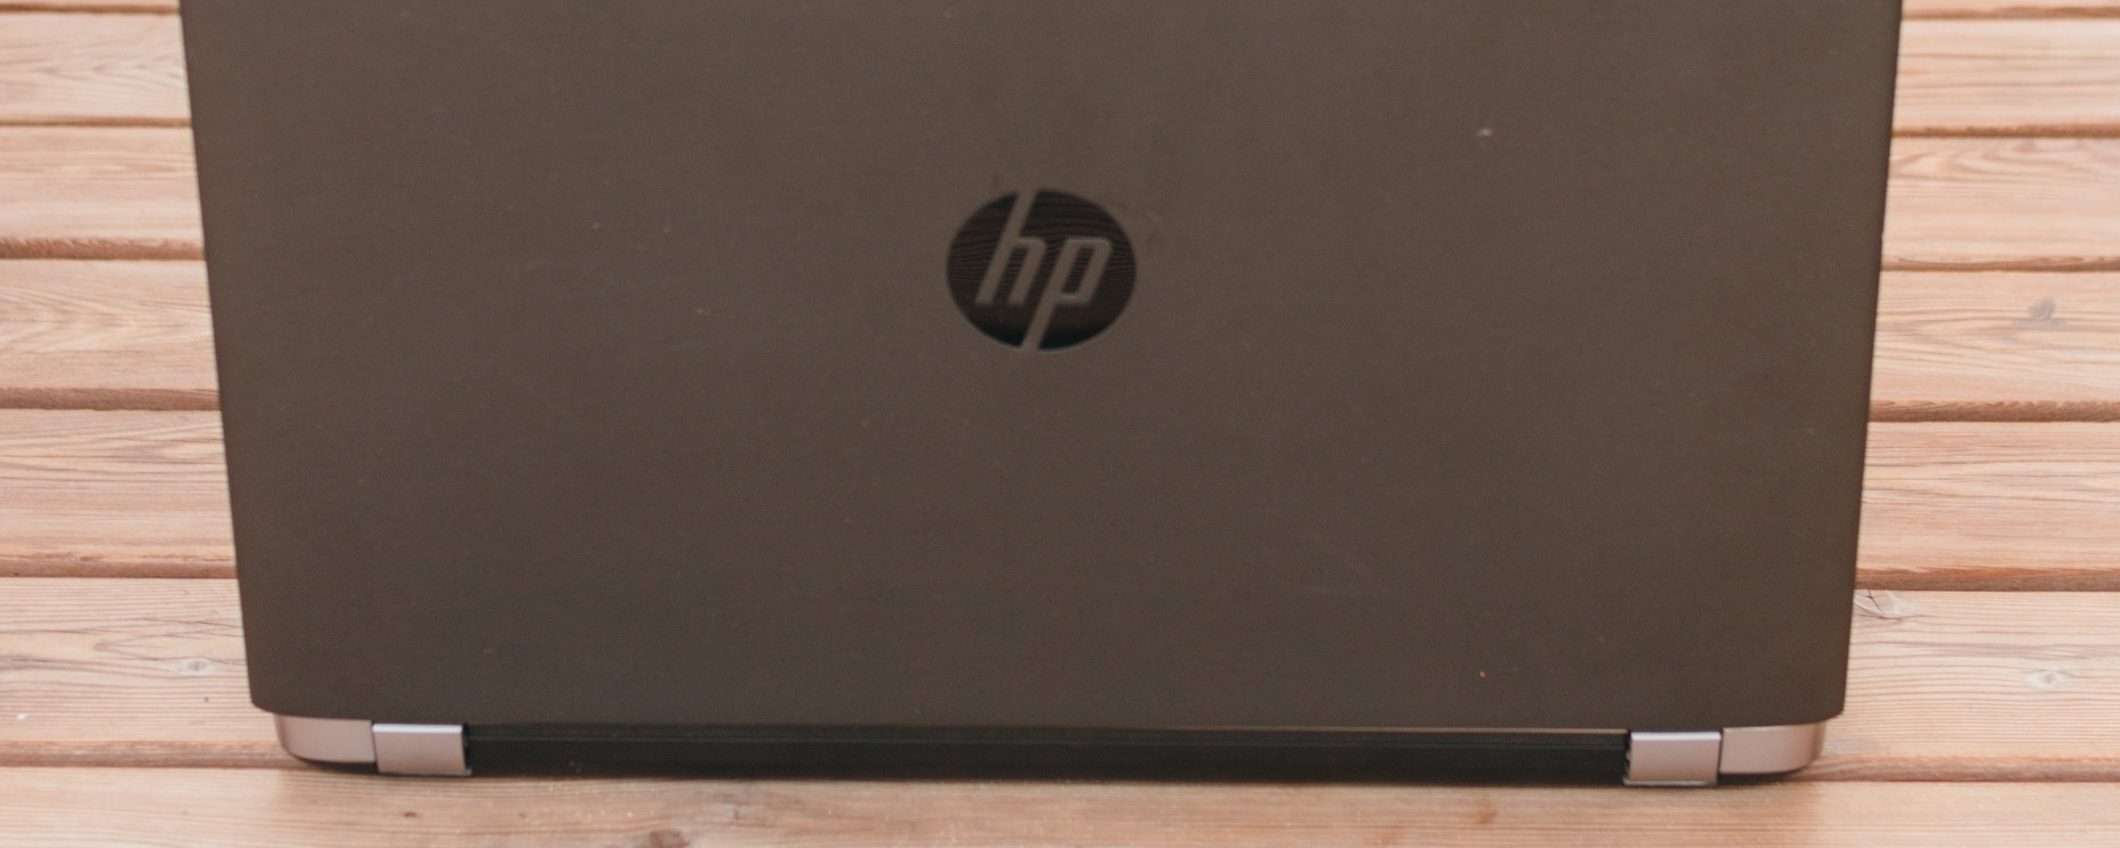 HP: domanda PC in calo, taglio di 6.000 posti di lavoro